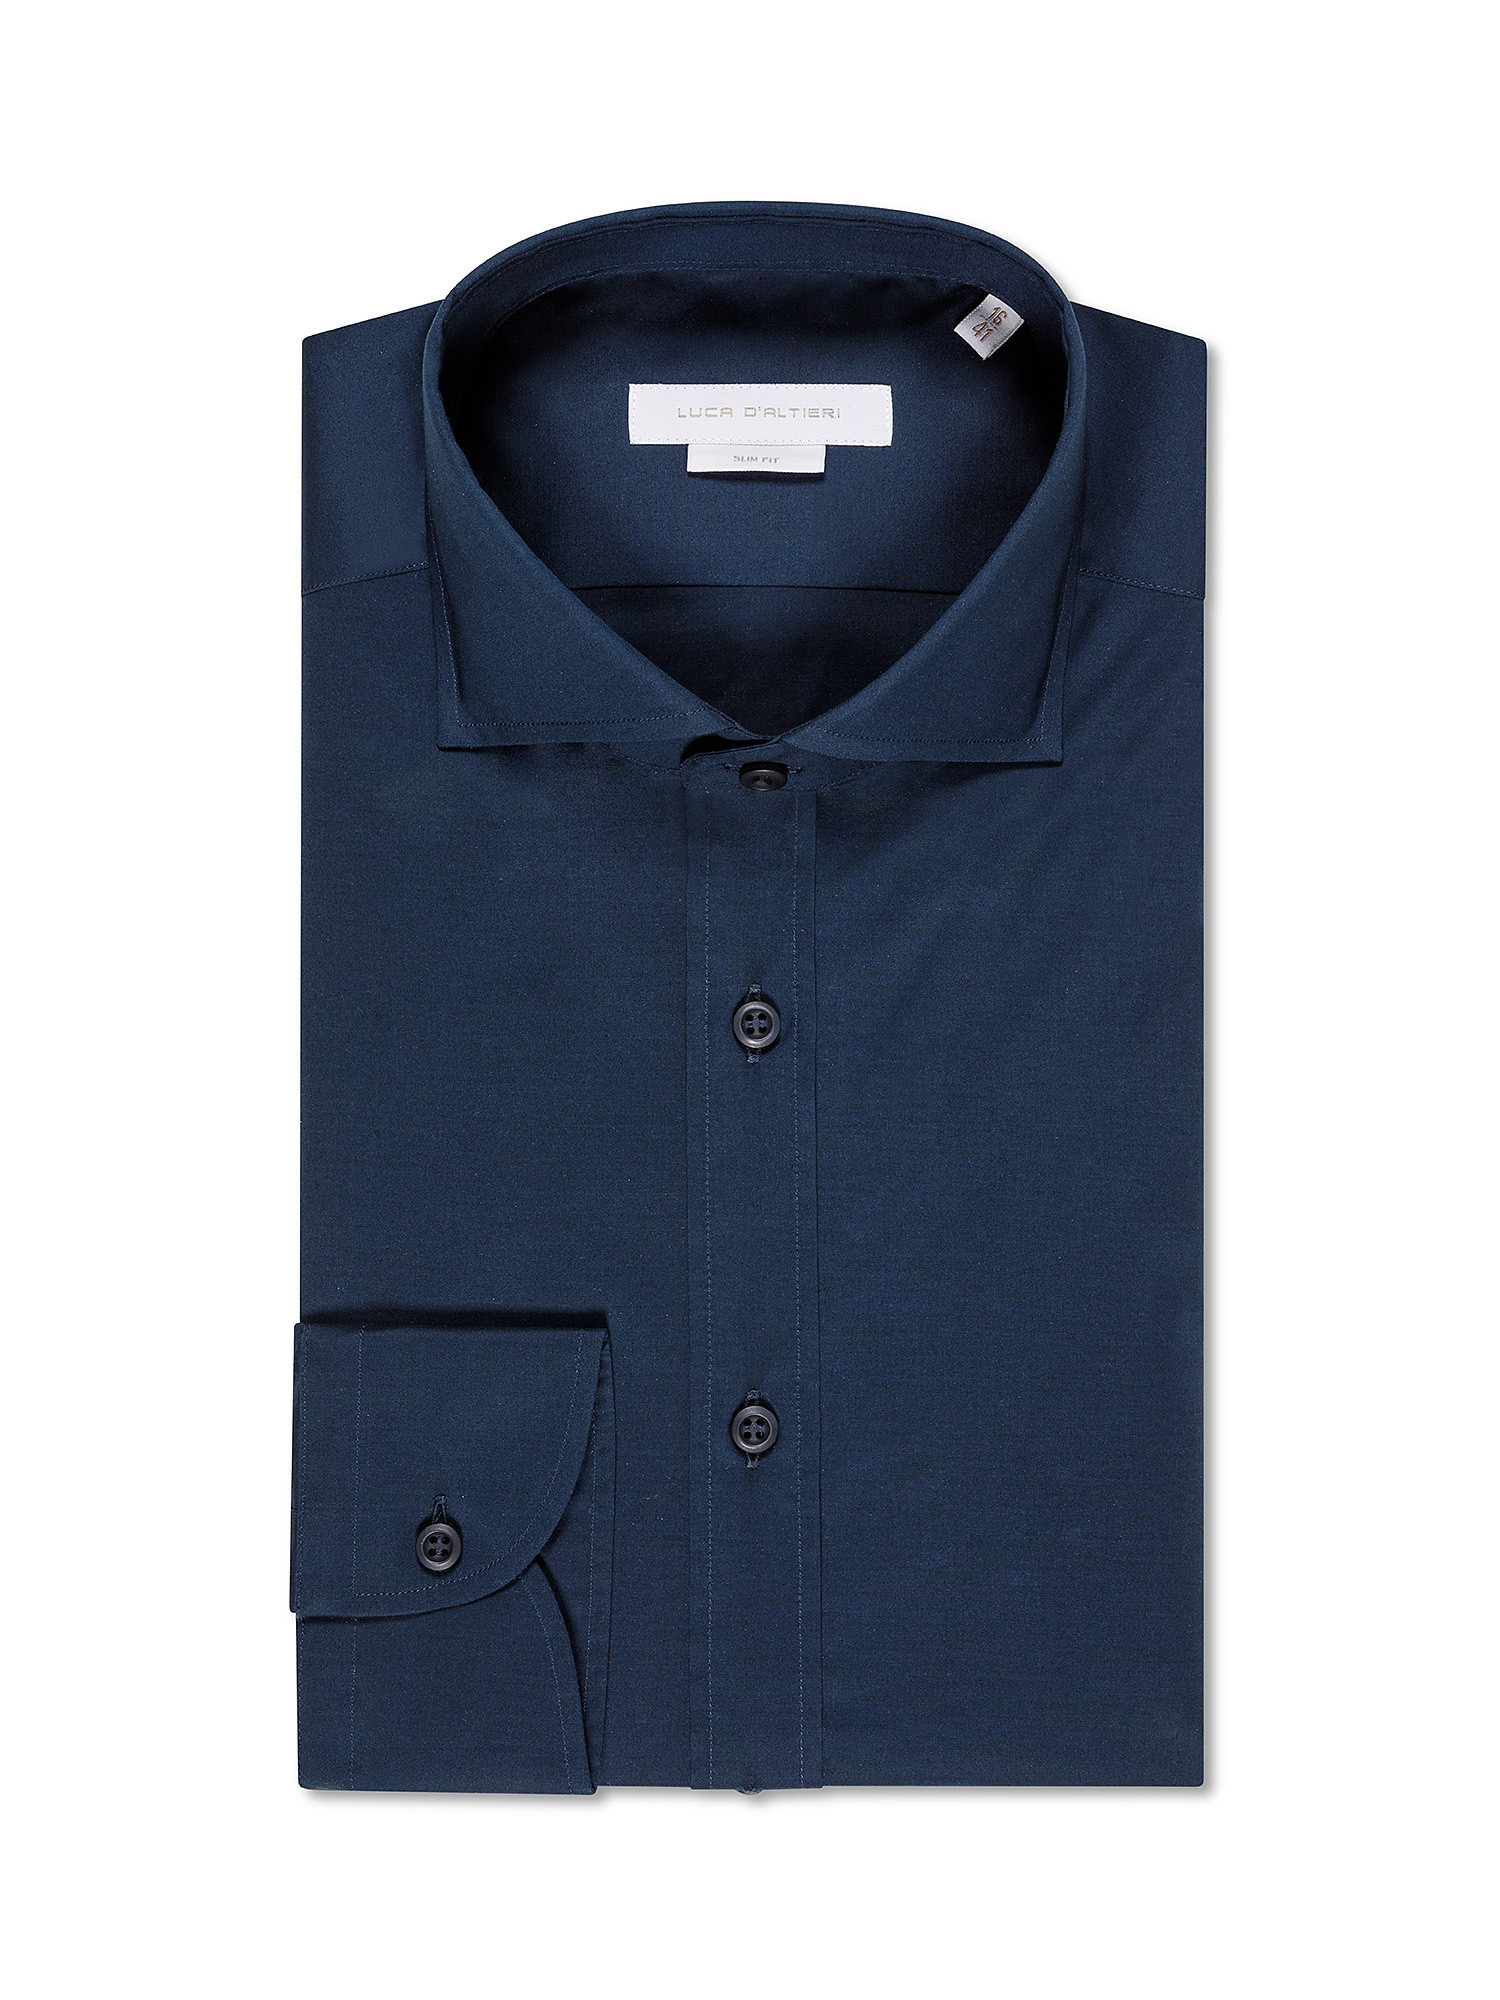 Рубашка узкого кроя из эластичного хлопка Luca D'Altieri, синий рубашка однотонная с длинными рукавами и костюмным воротником